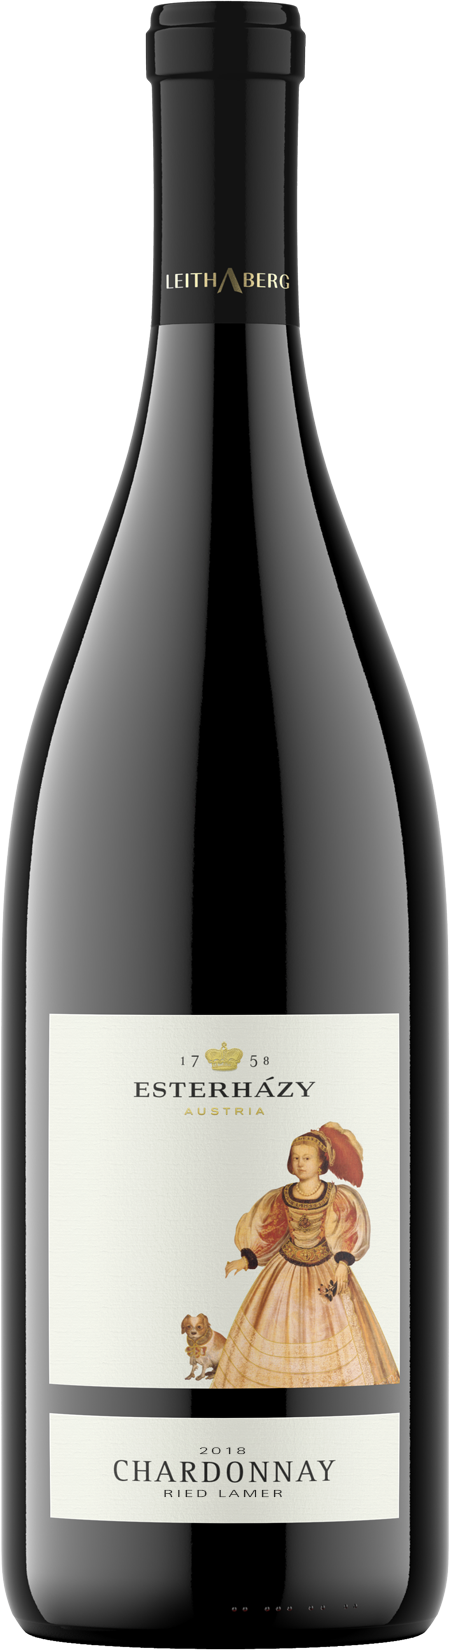 Esterhazy Chardonnay Lamer DAC 2019 0.75 lt EW-Fl.